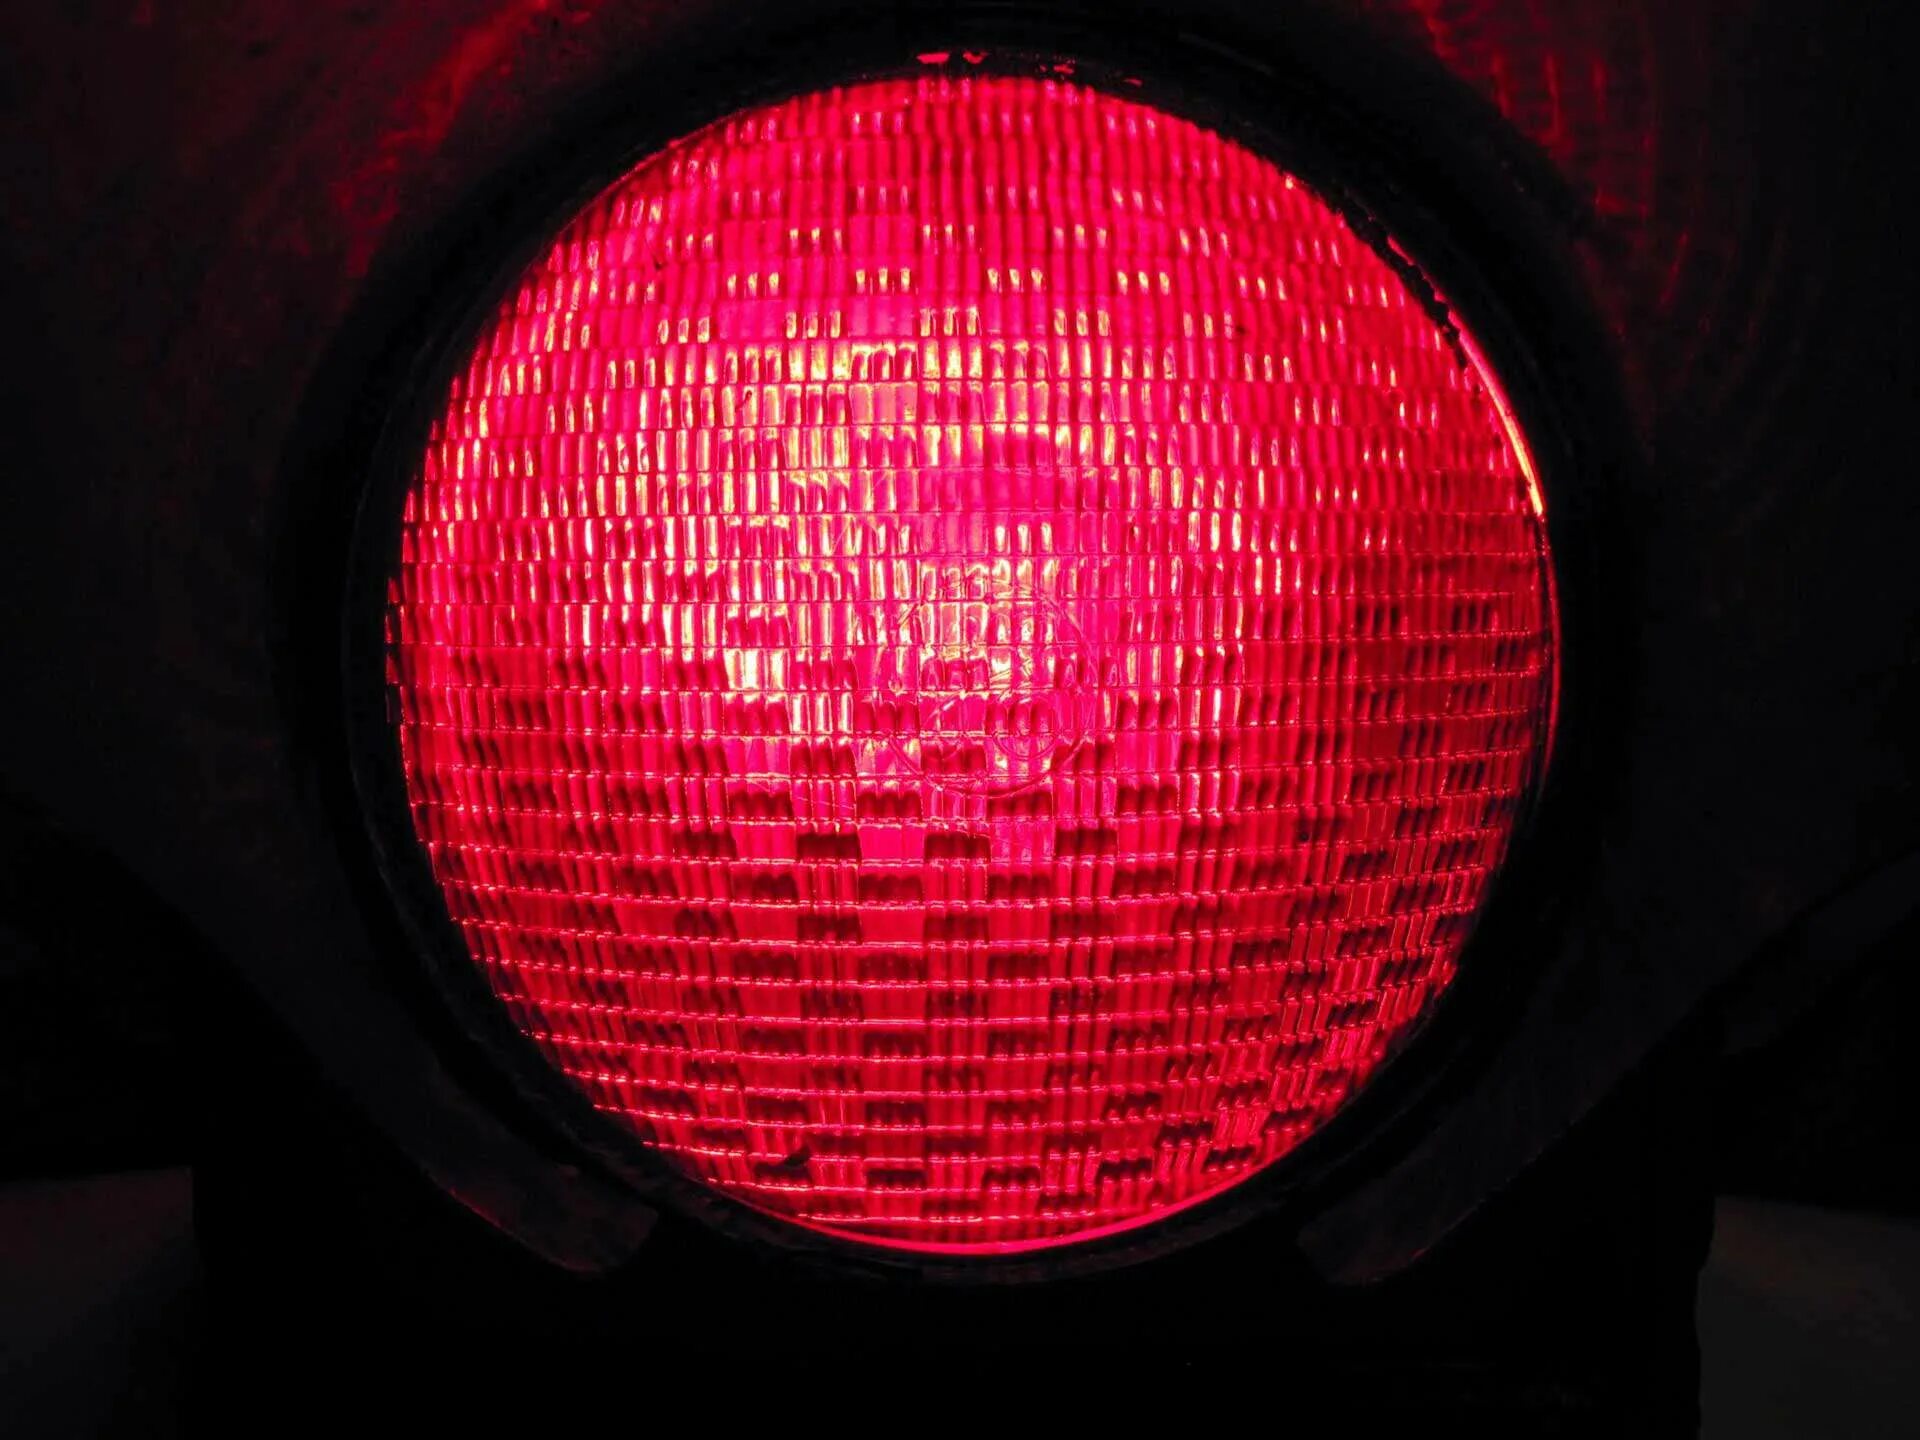 Я лечу на красный свет. Красный свет светофора. Красный йвет световофра. Свет от светофора красный. Светофор света красная.